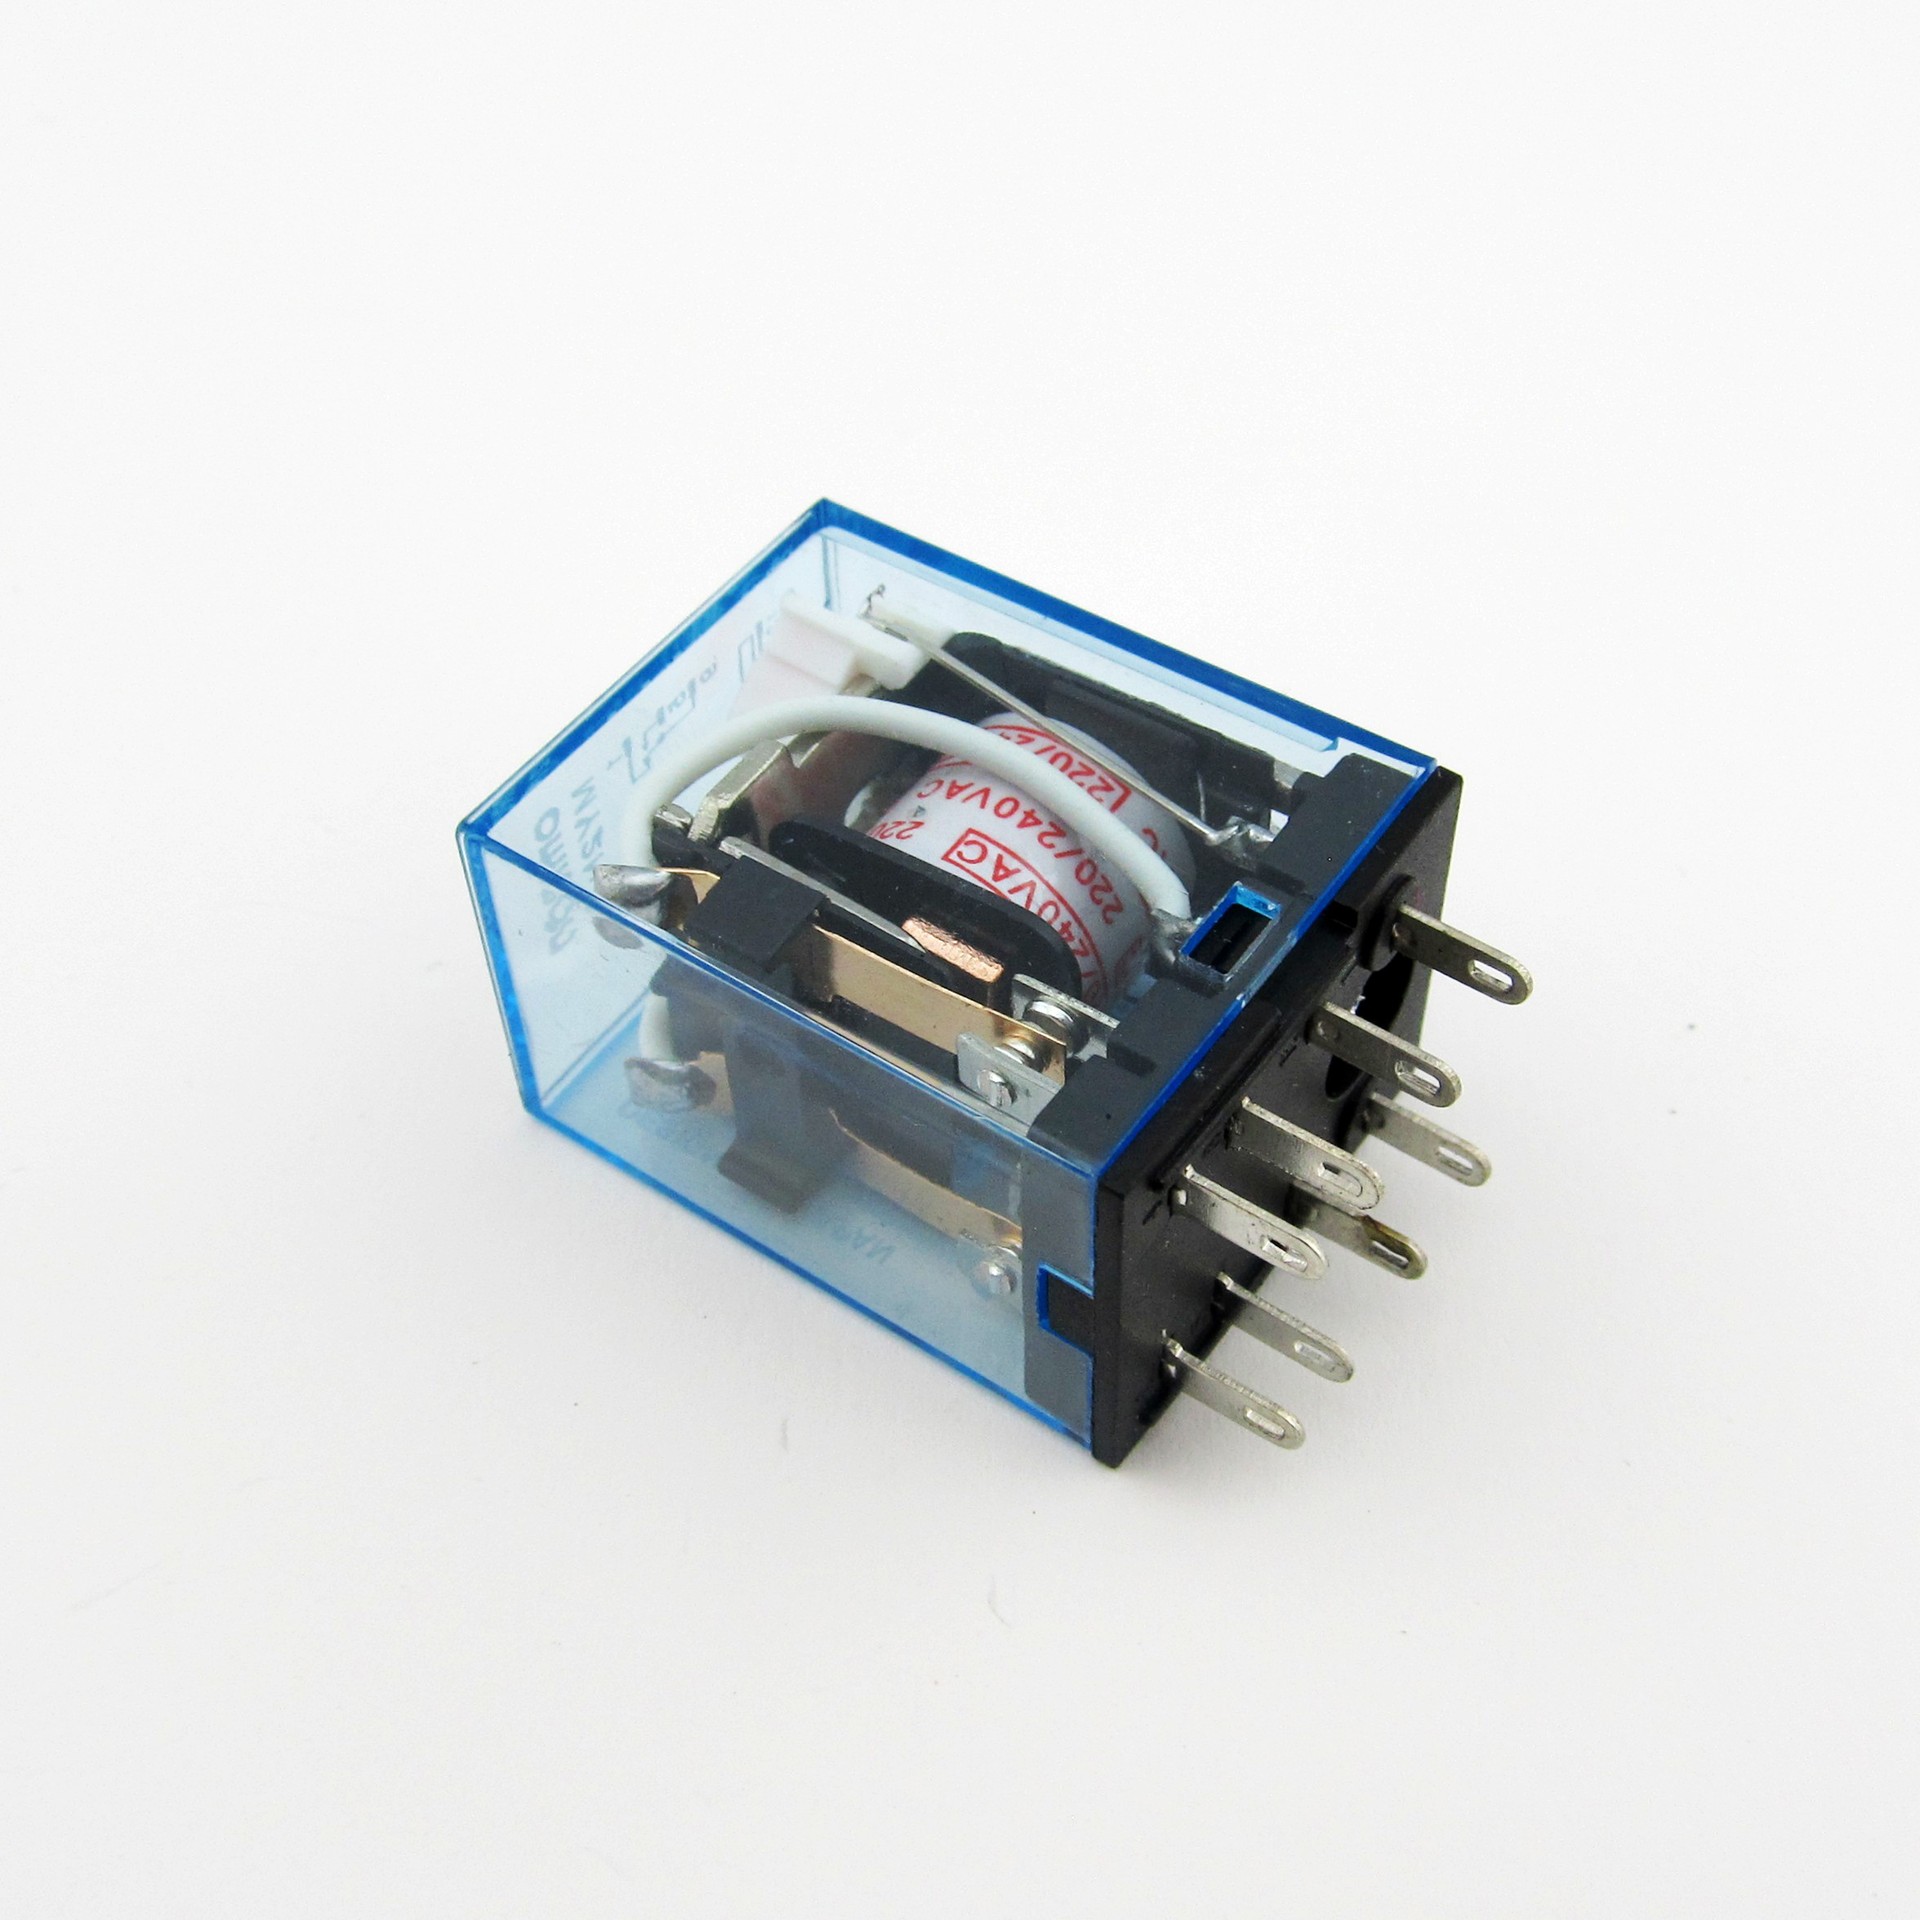 【名称】:小型电磁继电器